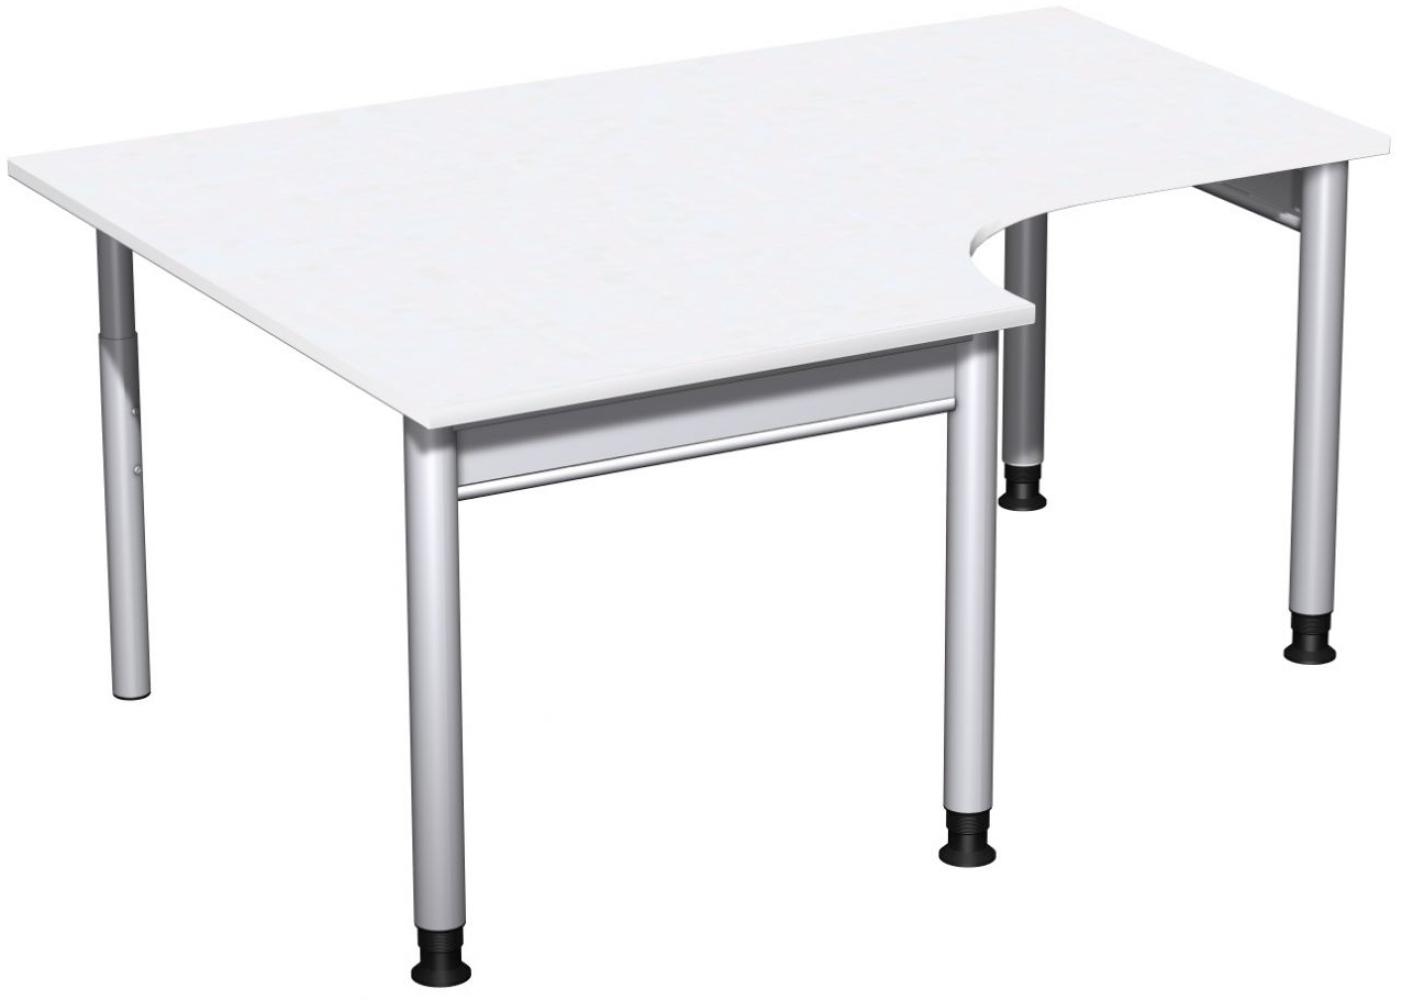 PC-Schreibtisch '4 Fuß Pro' links, höhenverstellbar, 160x120cm, Weiß / Silber Bild 1